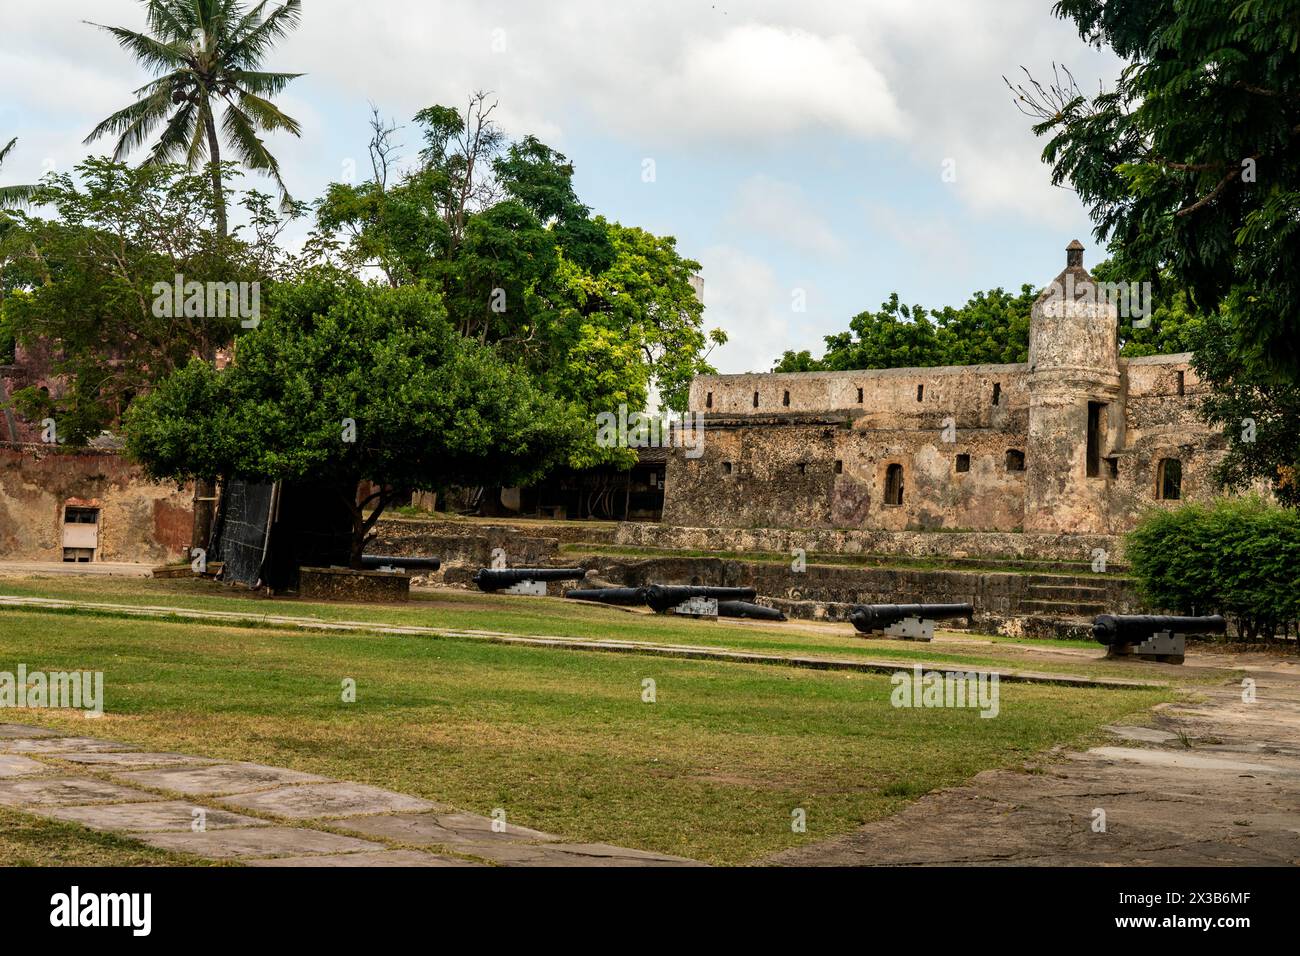 Vieux fort Jésus dans la ville kenyane de Mombasa sur la côte de l'océan Indien. Fort Jesus est une fortification portugaise à Mombasa, au Kenya. C'était buil Banque D'Images